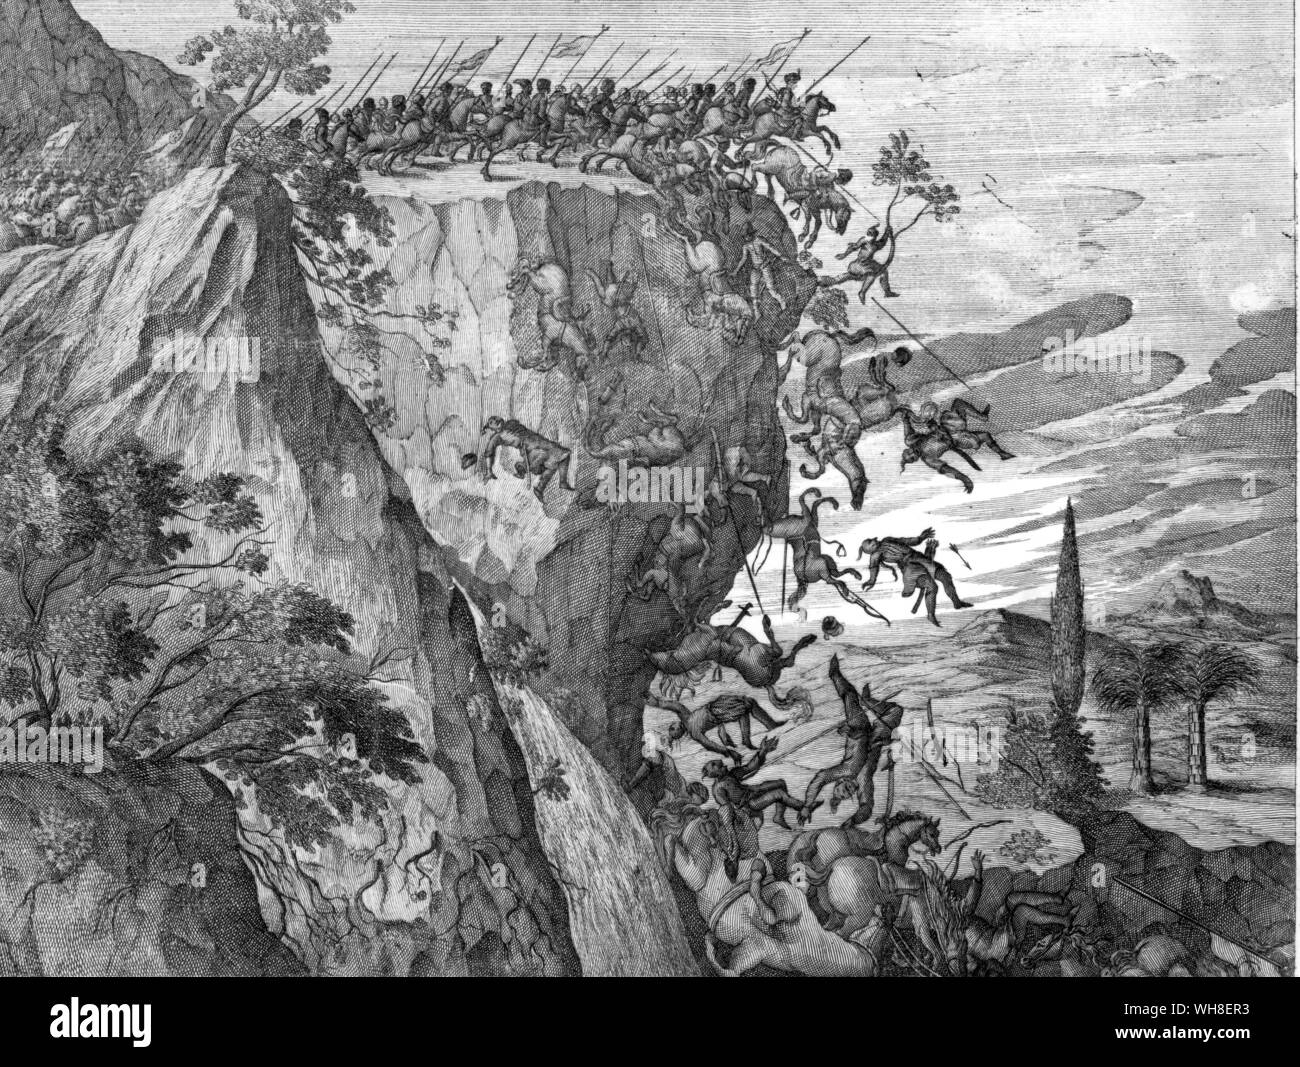 Kriegsführung in bergigen Äthiopien - Sechs hundert Ritter über eine Klippe fallen. Eine Illustration aus dem siebzehnten Jahrhundert Geschichte Äthiopiens. Stockfoto